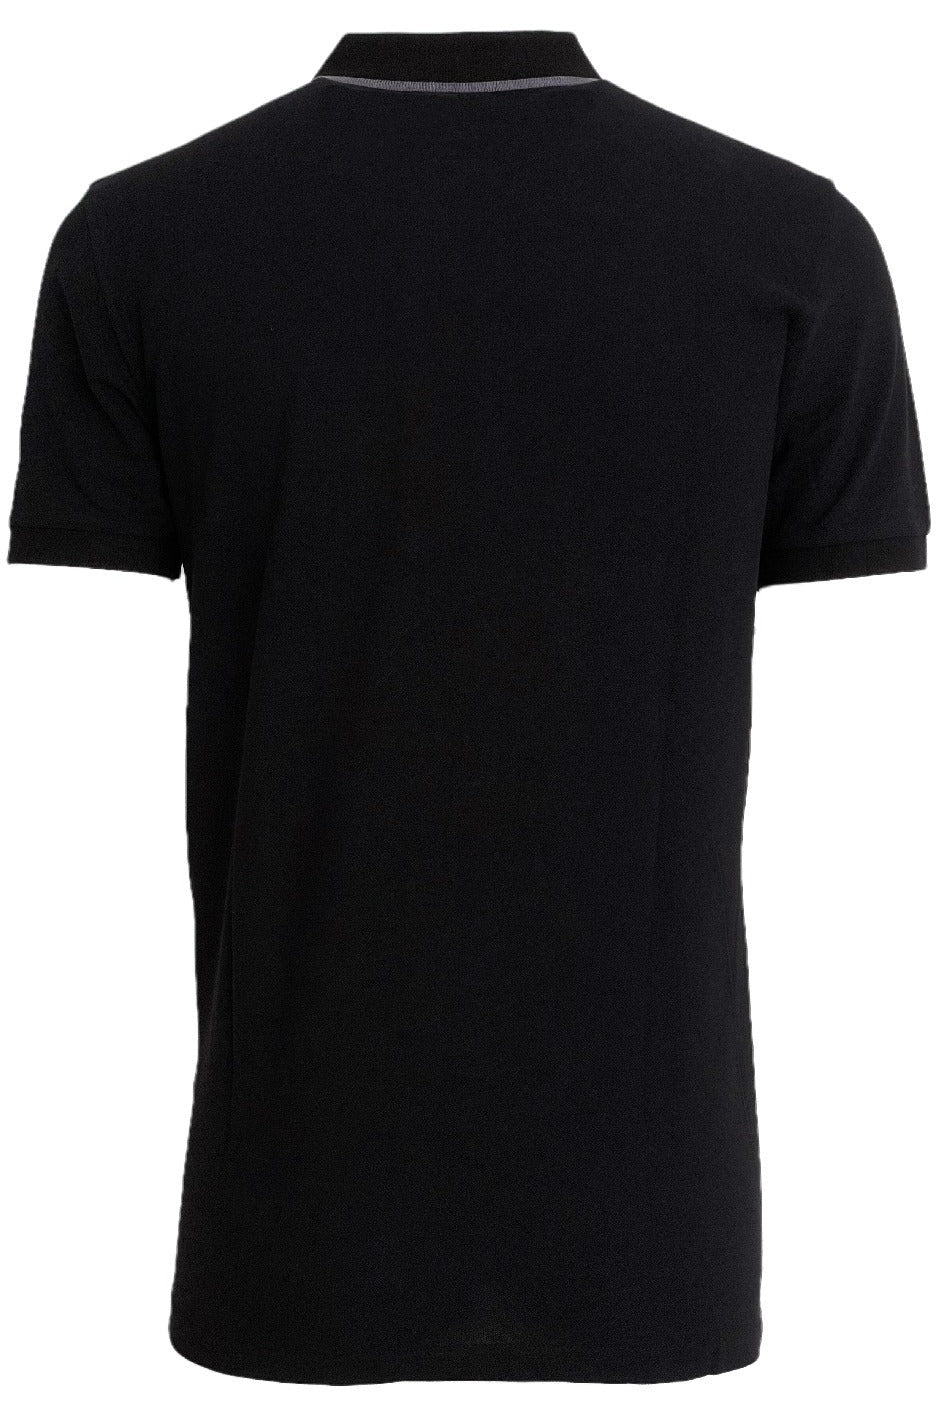 Hugo Boss Polo Shirt In Black